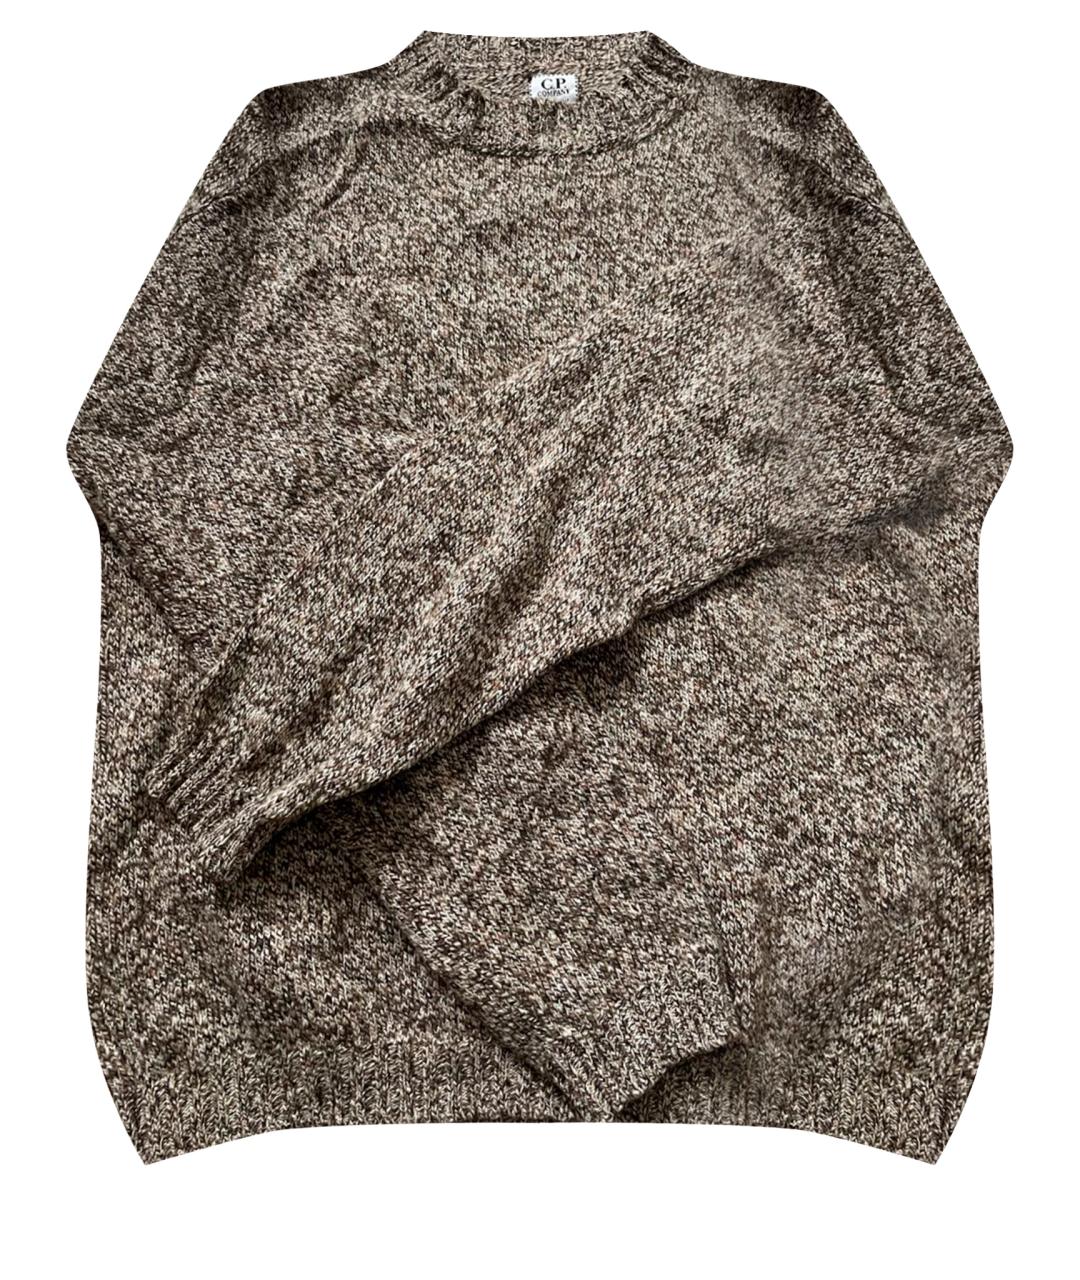 CP COMPANY Бежевый кашемировый джемпер / свитер, фото 1